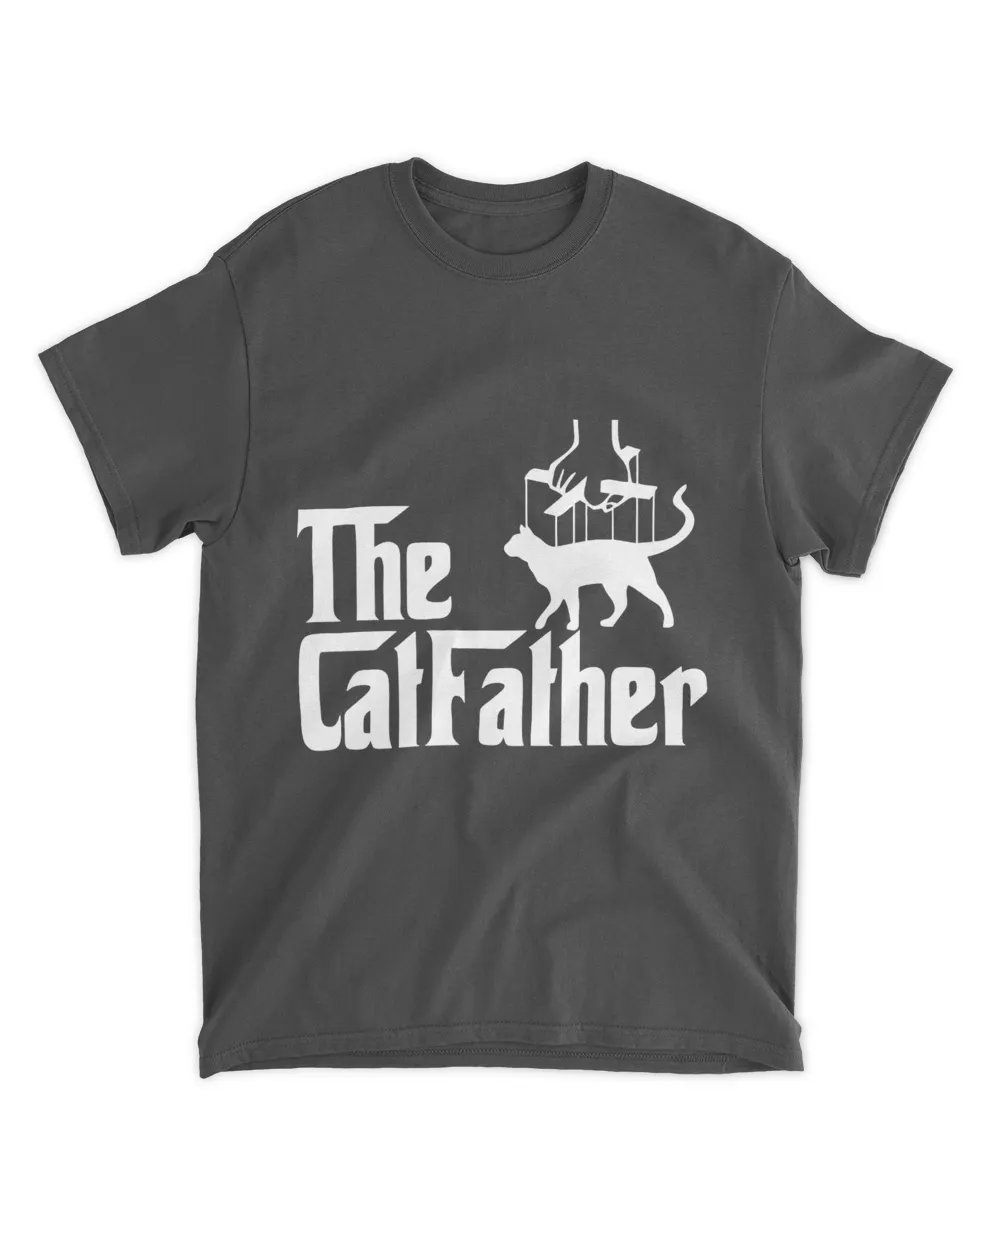 The CatFather QTCAT161222A14